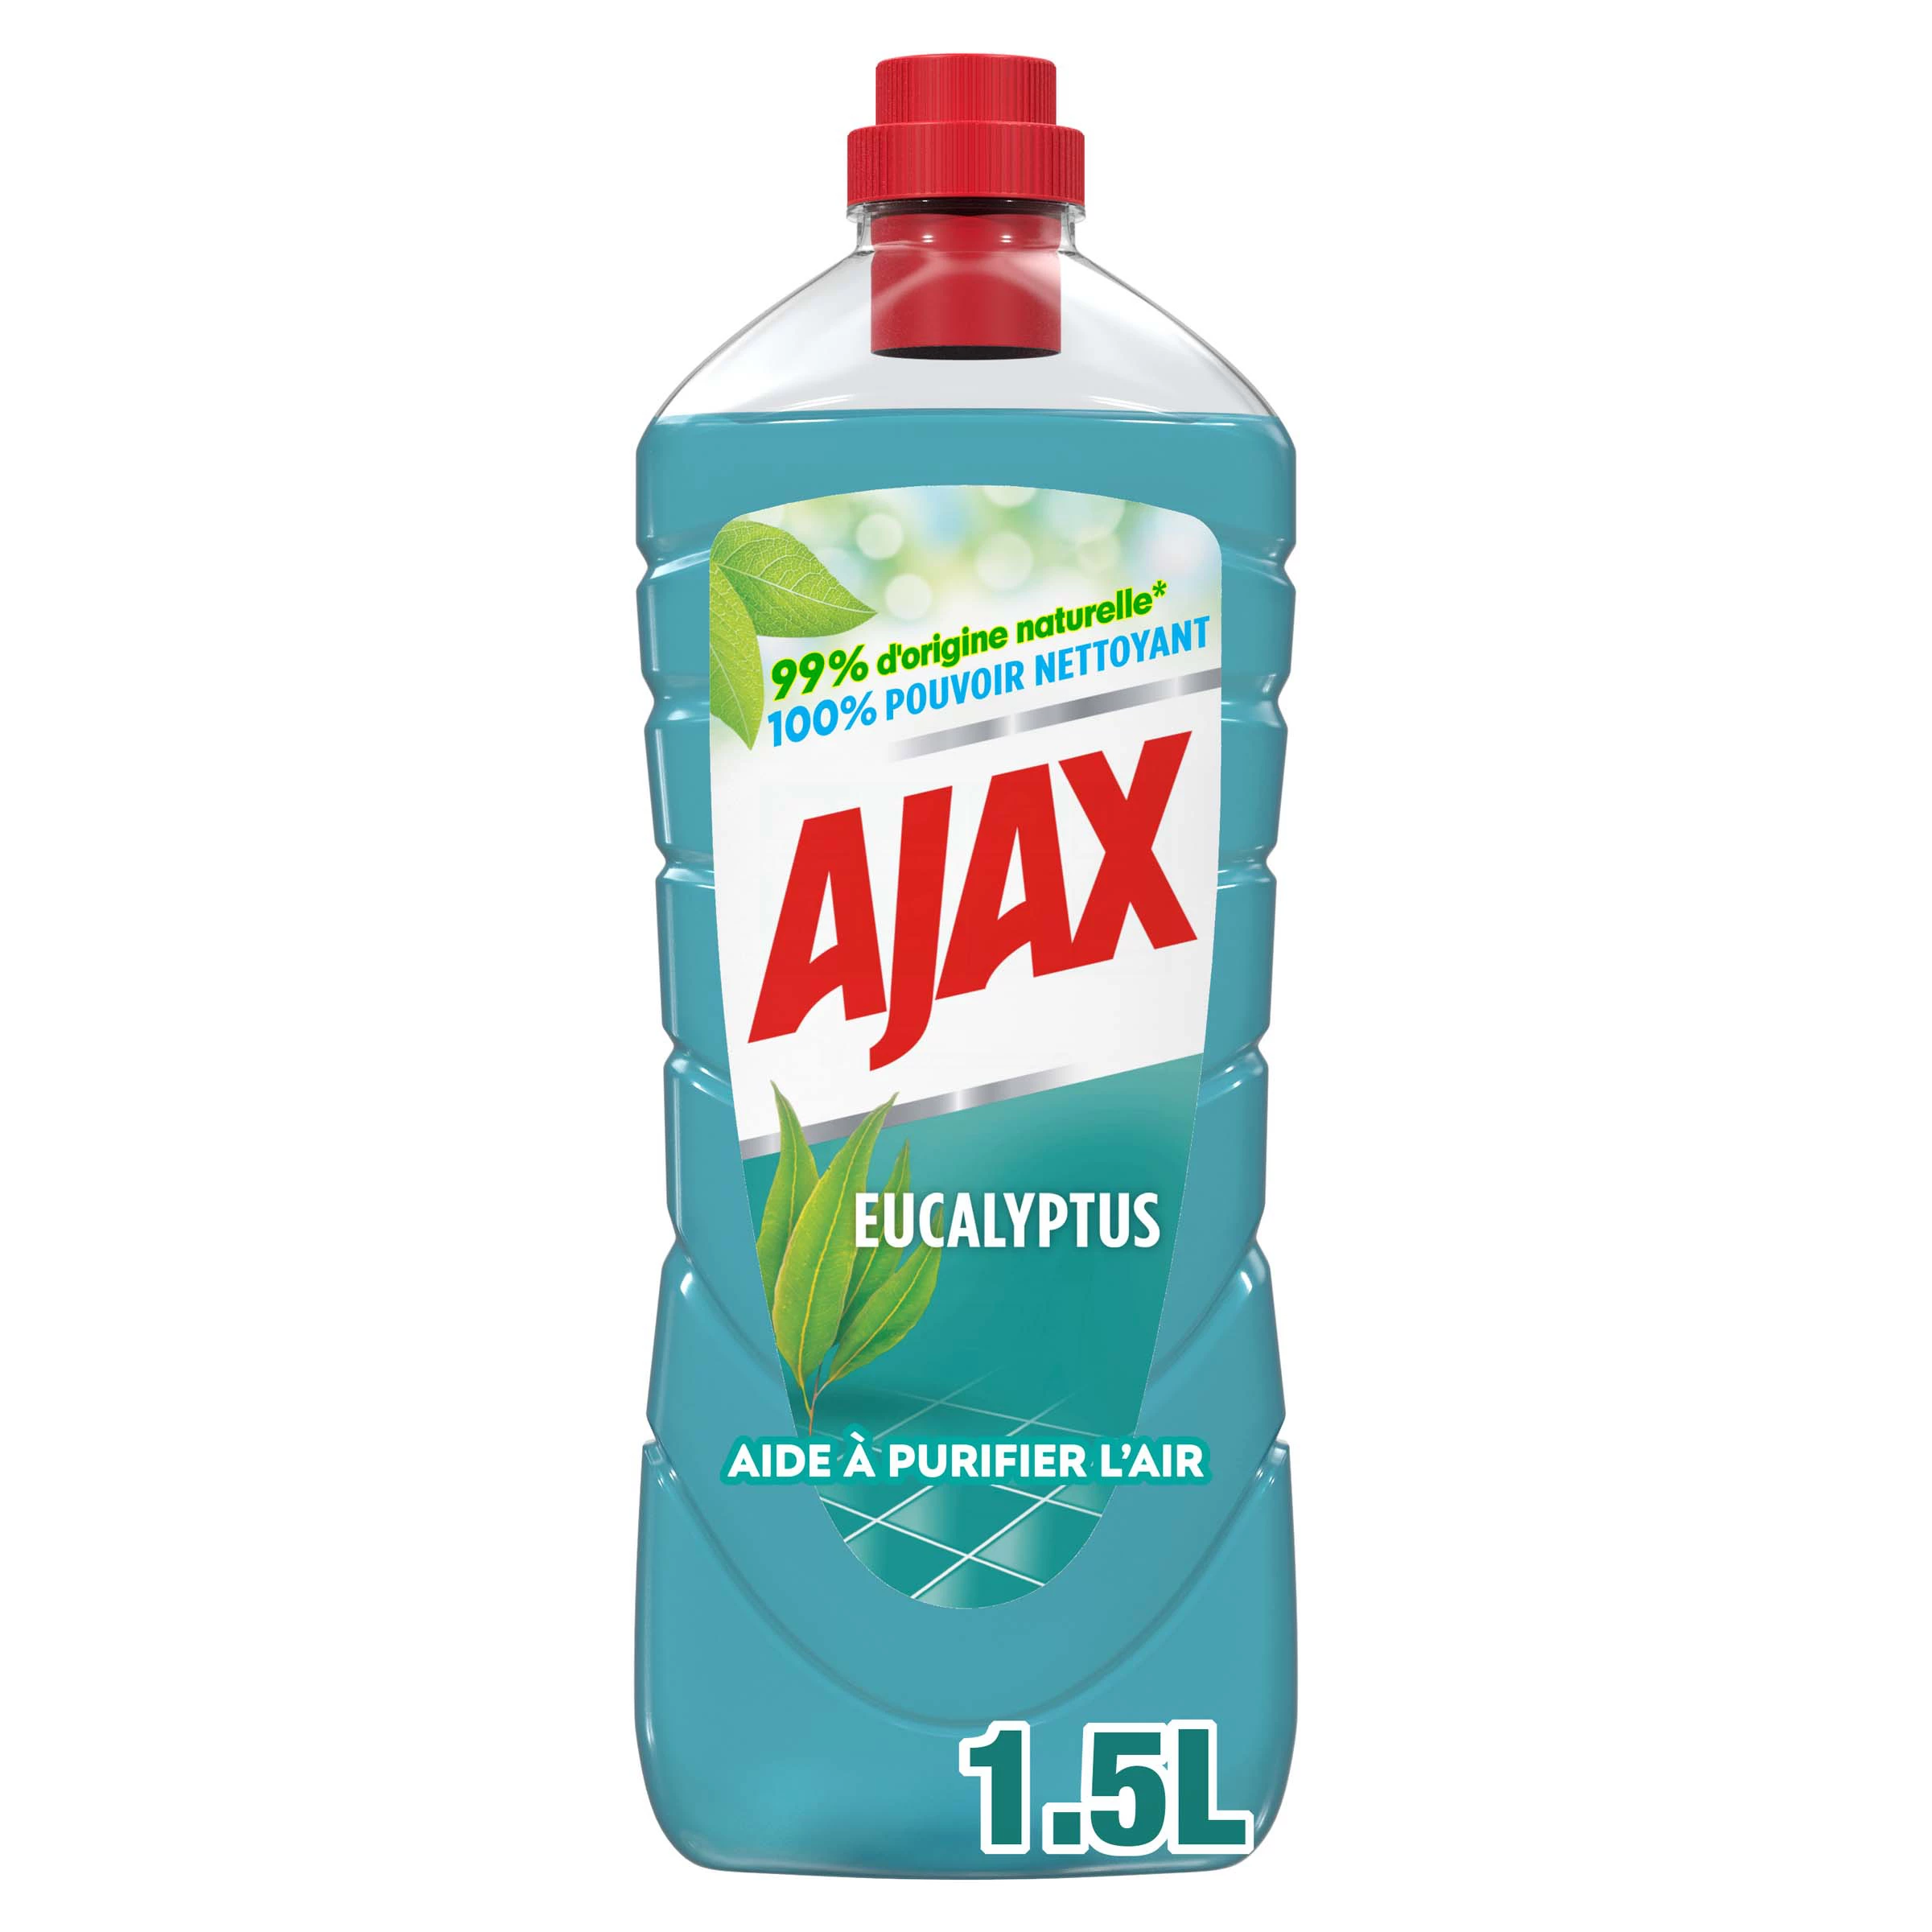 Limpador multifuncional e para pisos domésticos purifica o ar com eucalipto ecologicamente responsável - AJAX